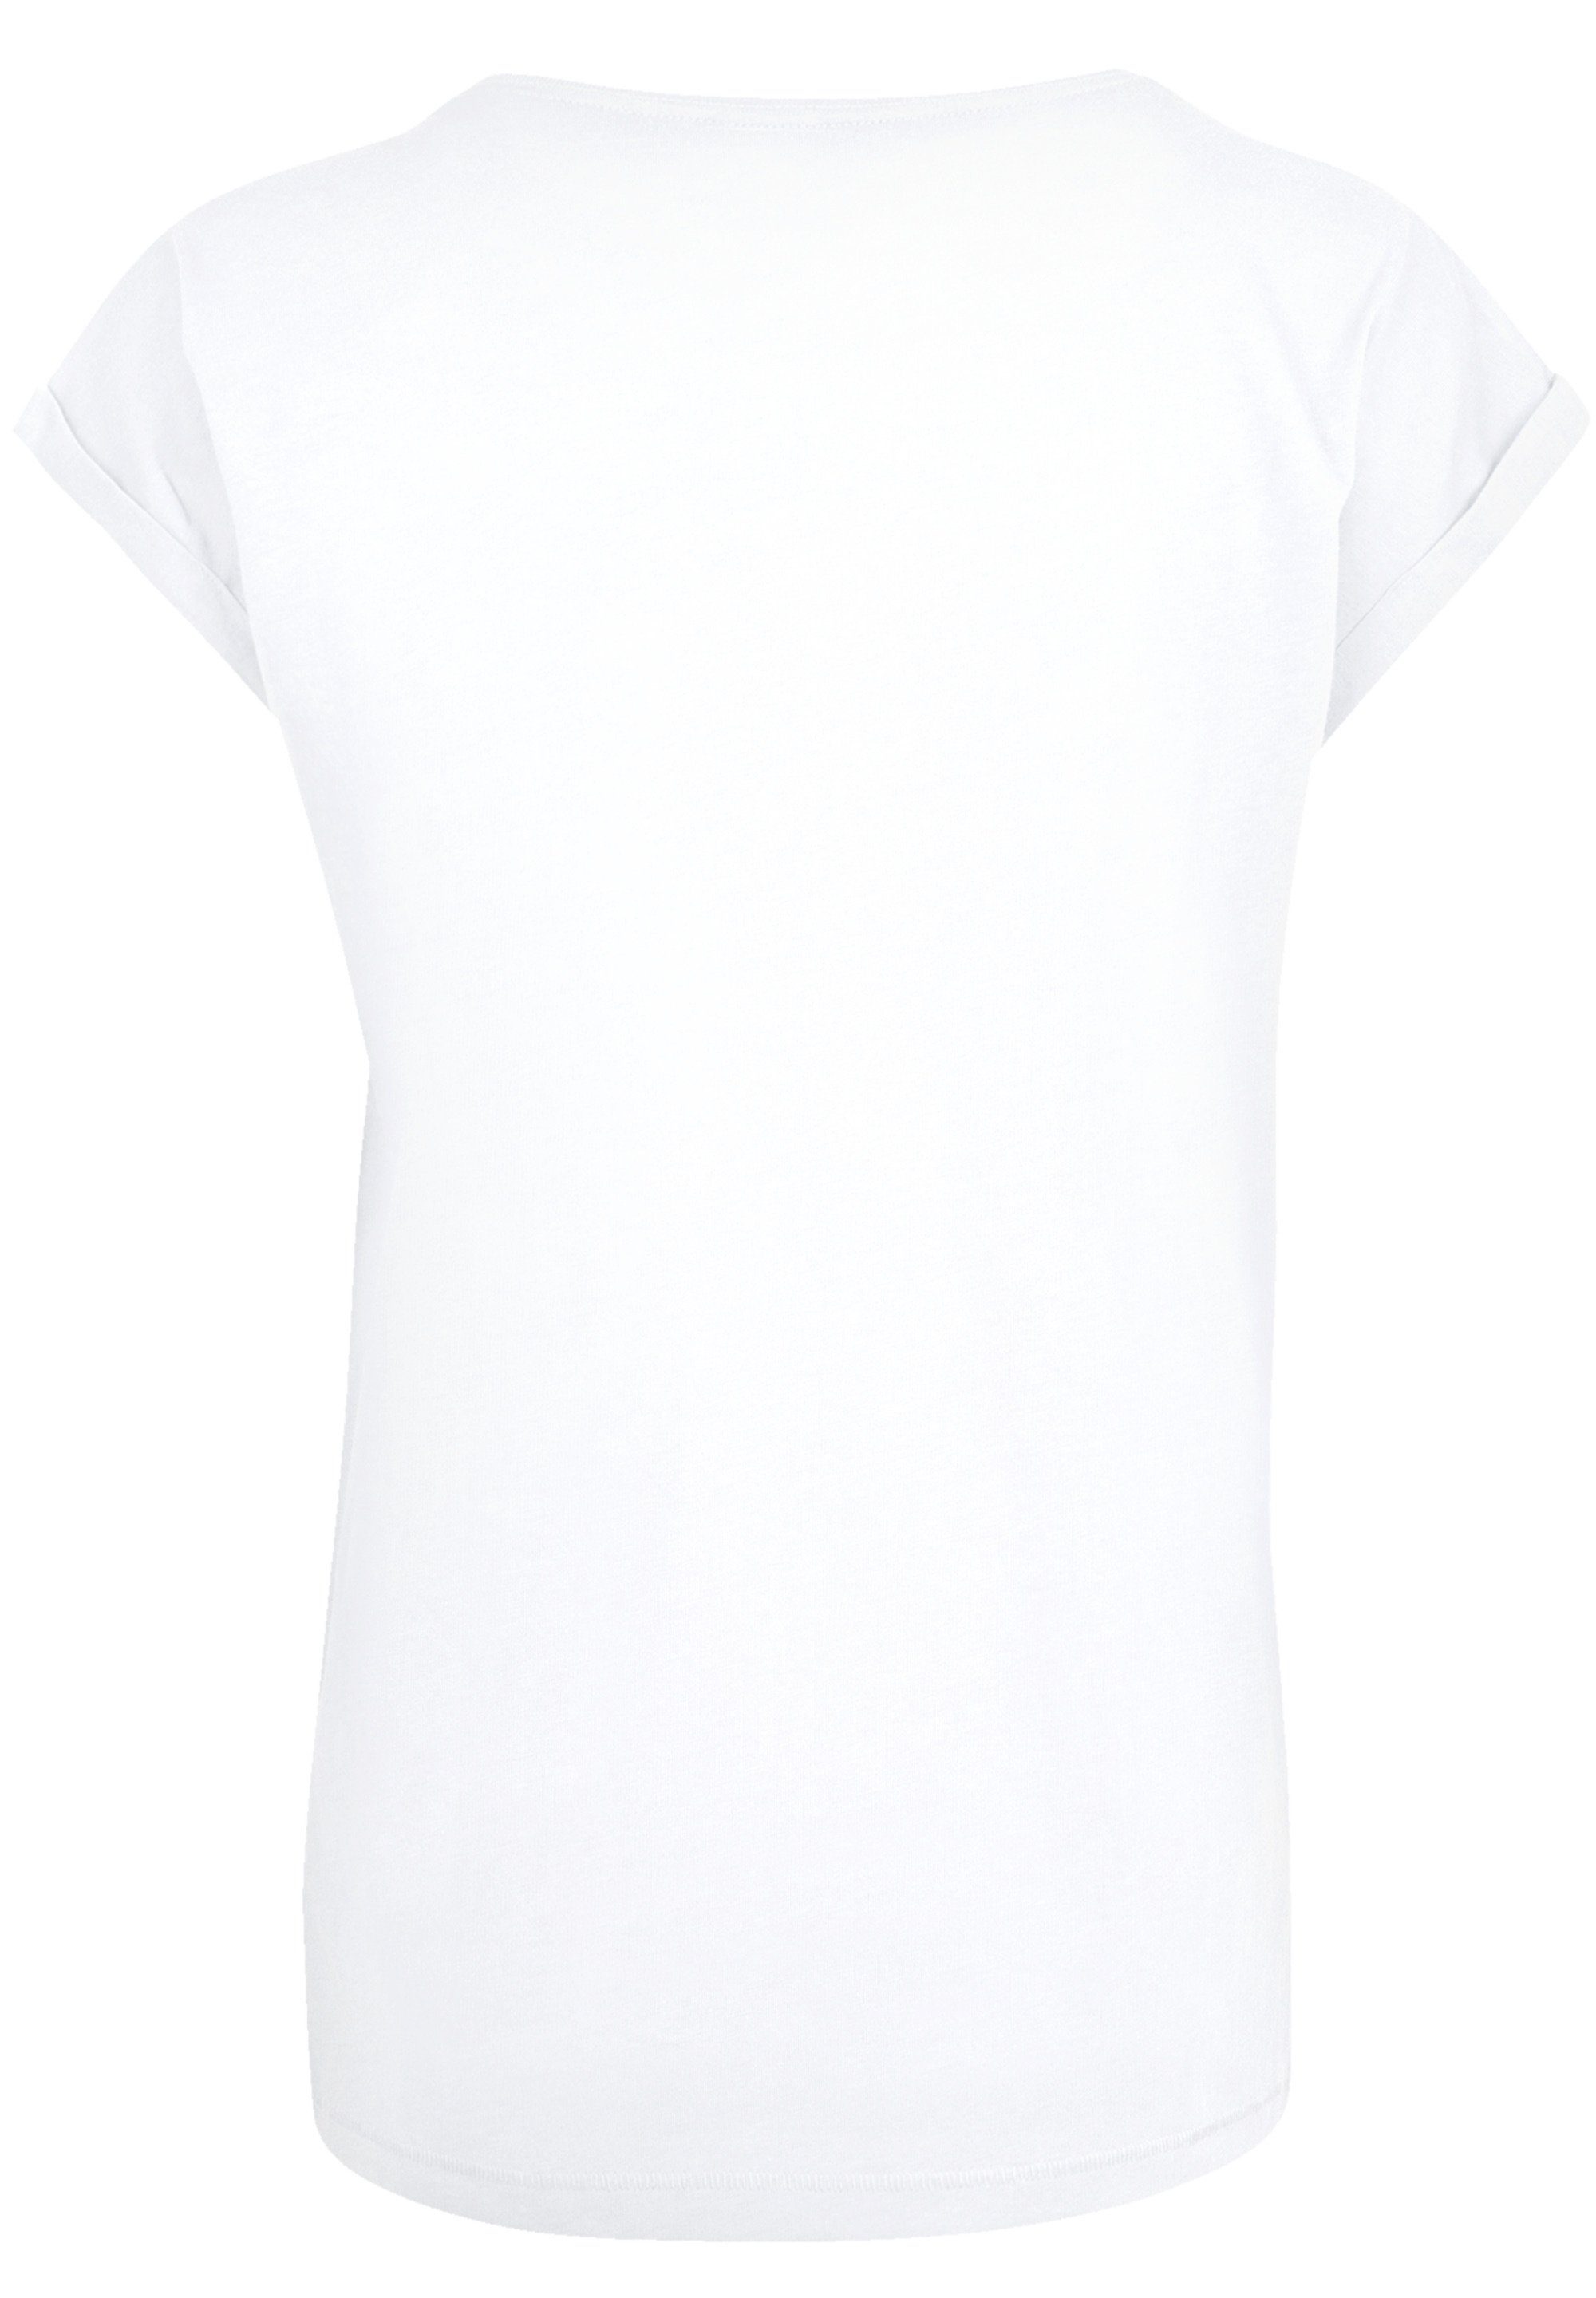 König Disney T-Shirt Premium Löwen Qualität white der F4NT4STIC Together